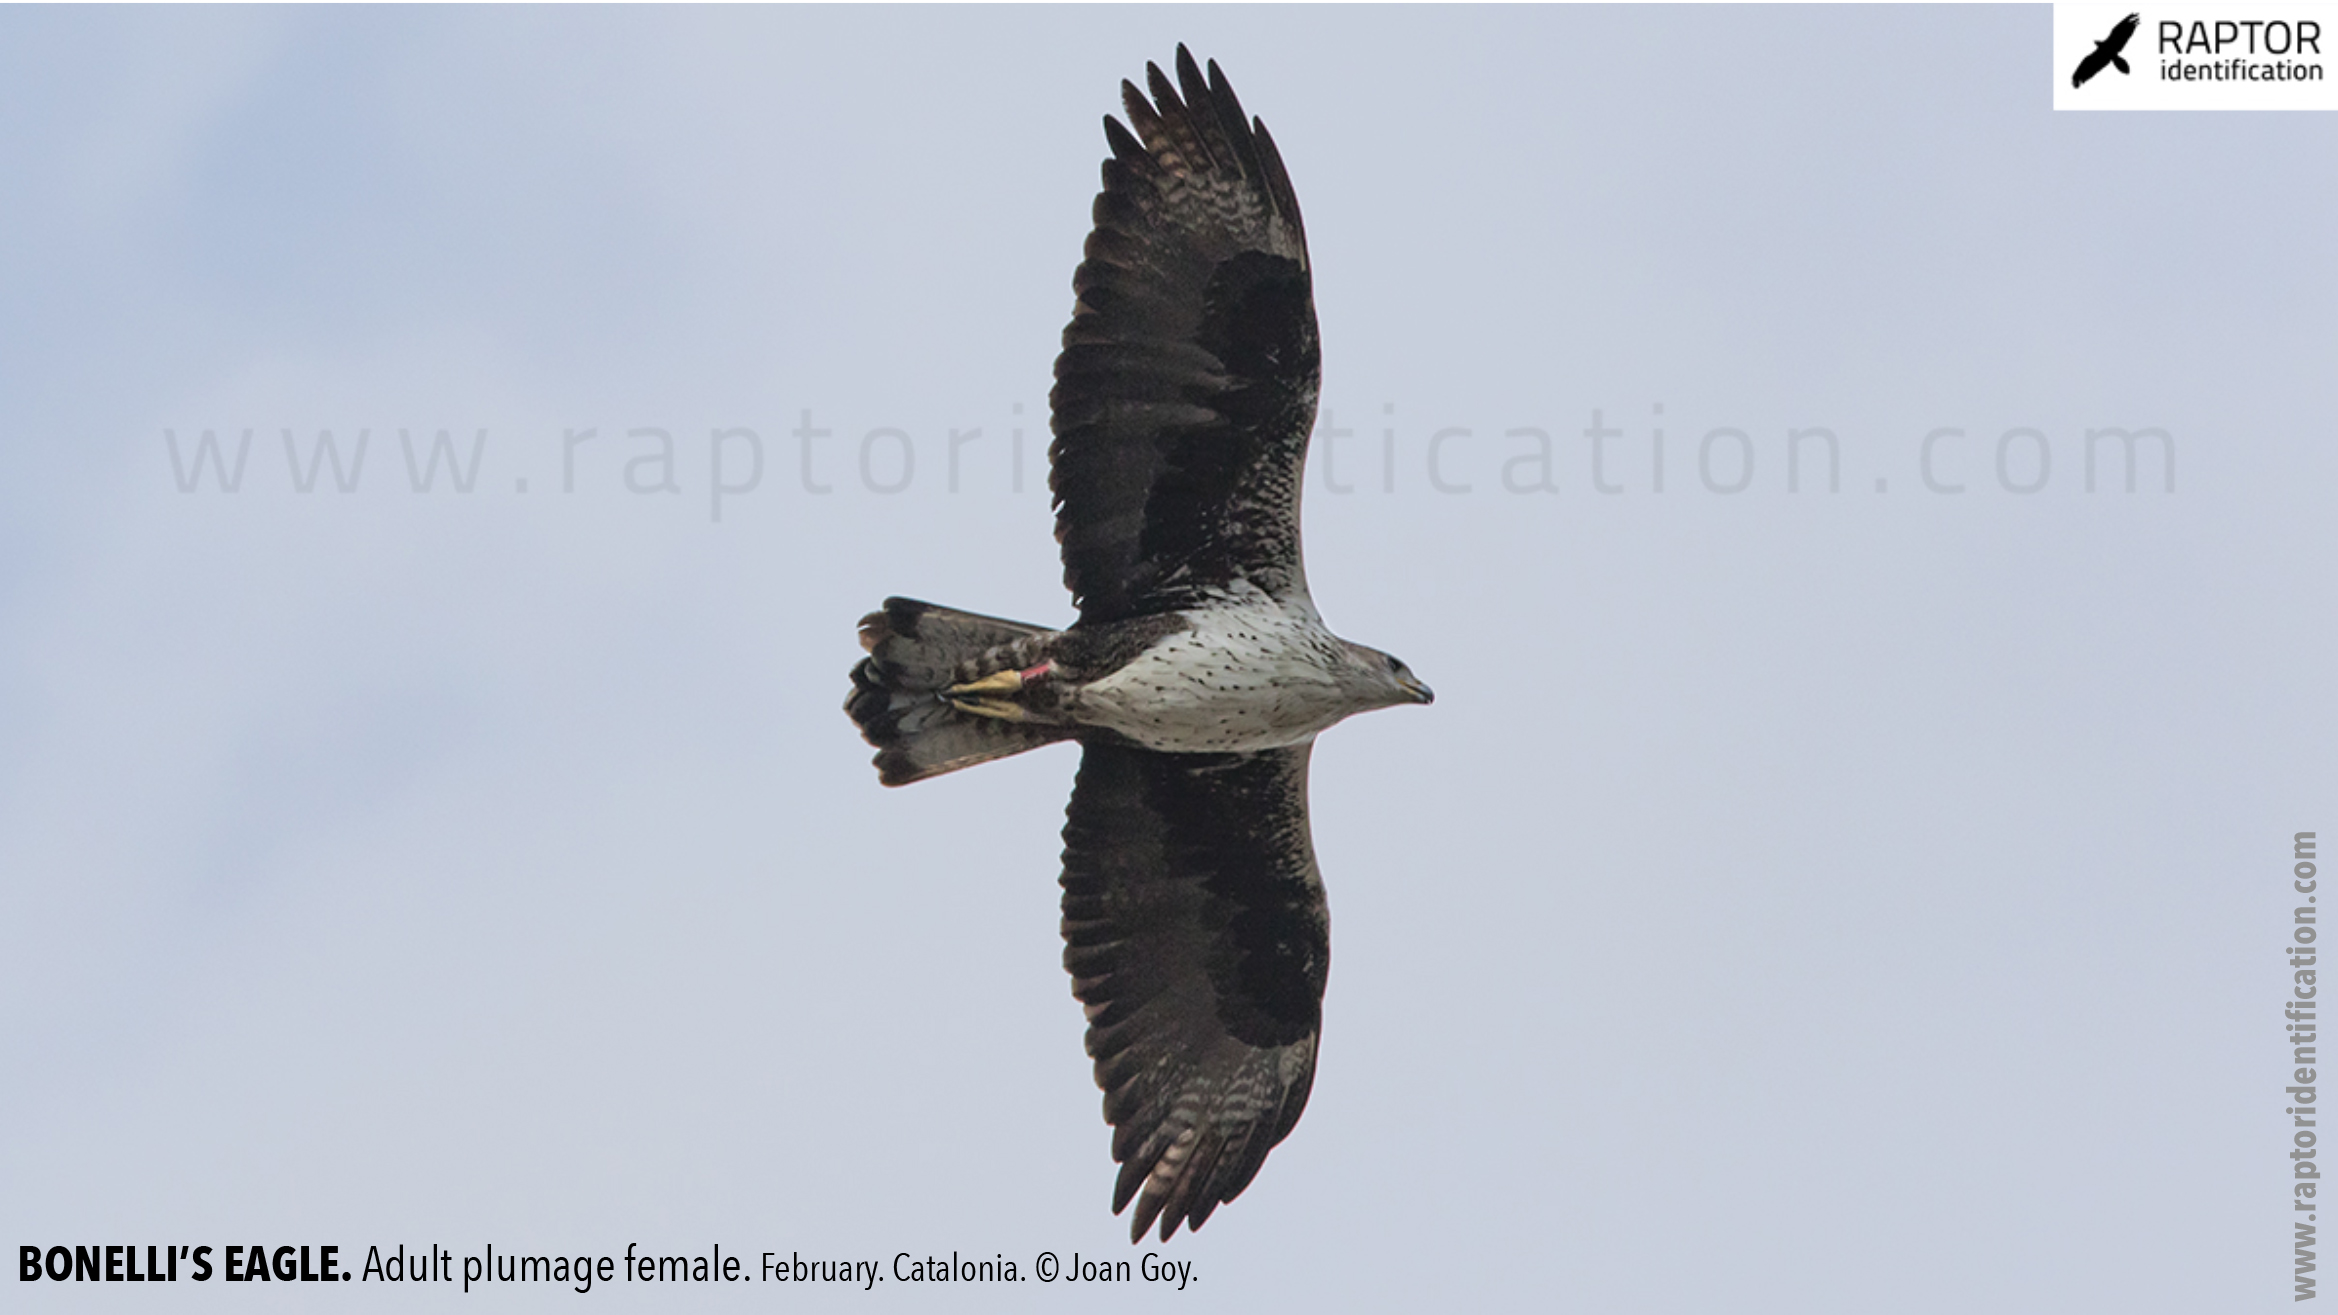 Bonellis-Eagle-adult-plumage-identification